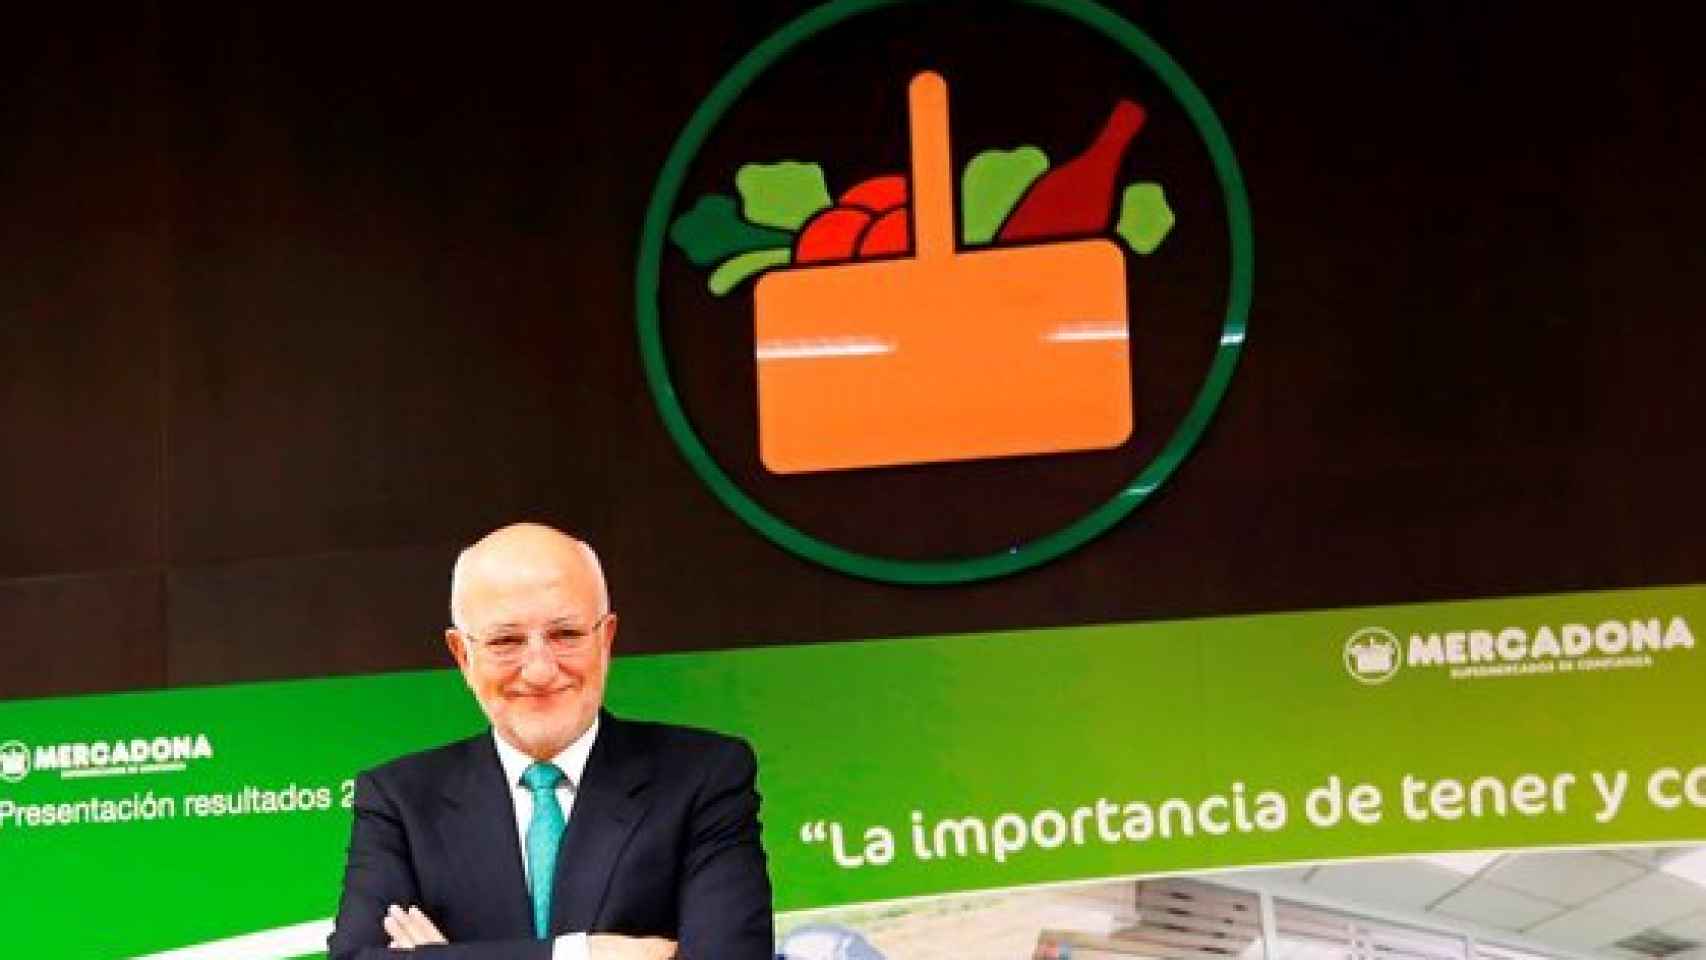 Juan Roig presidente de Mercadona, en la presentación de resultados de 2014